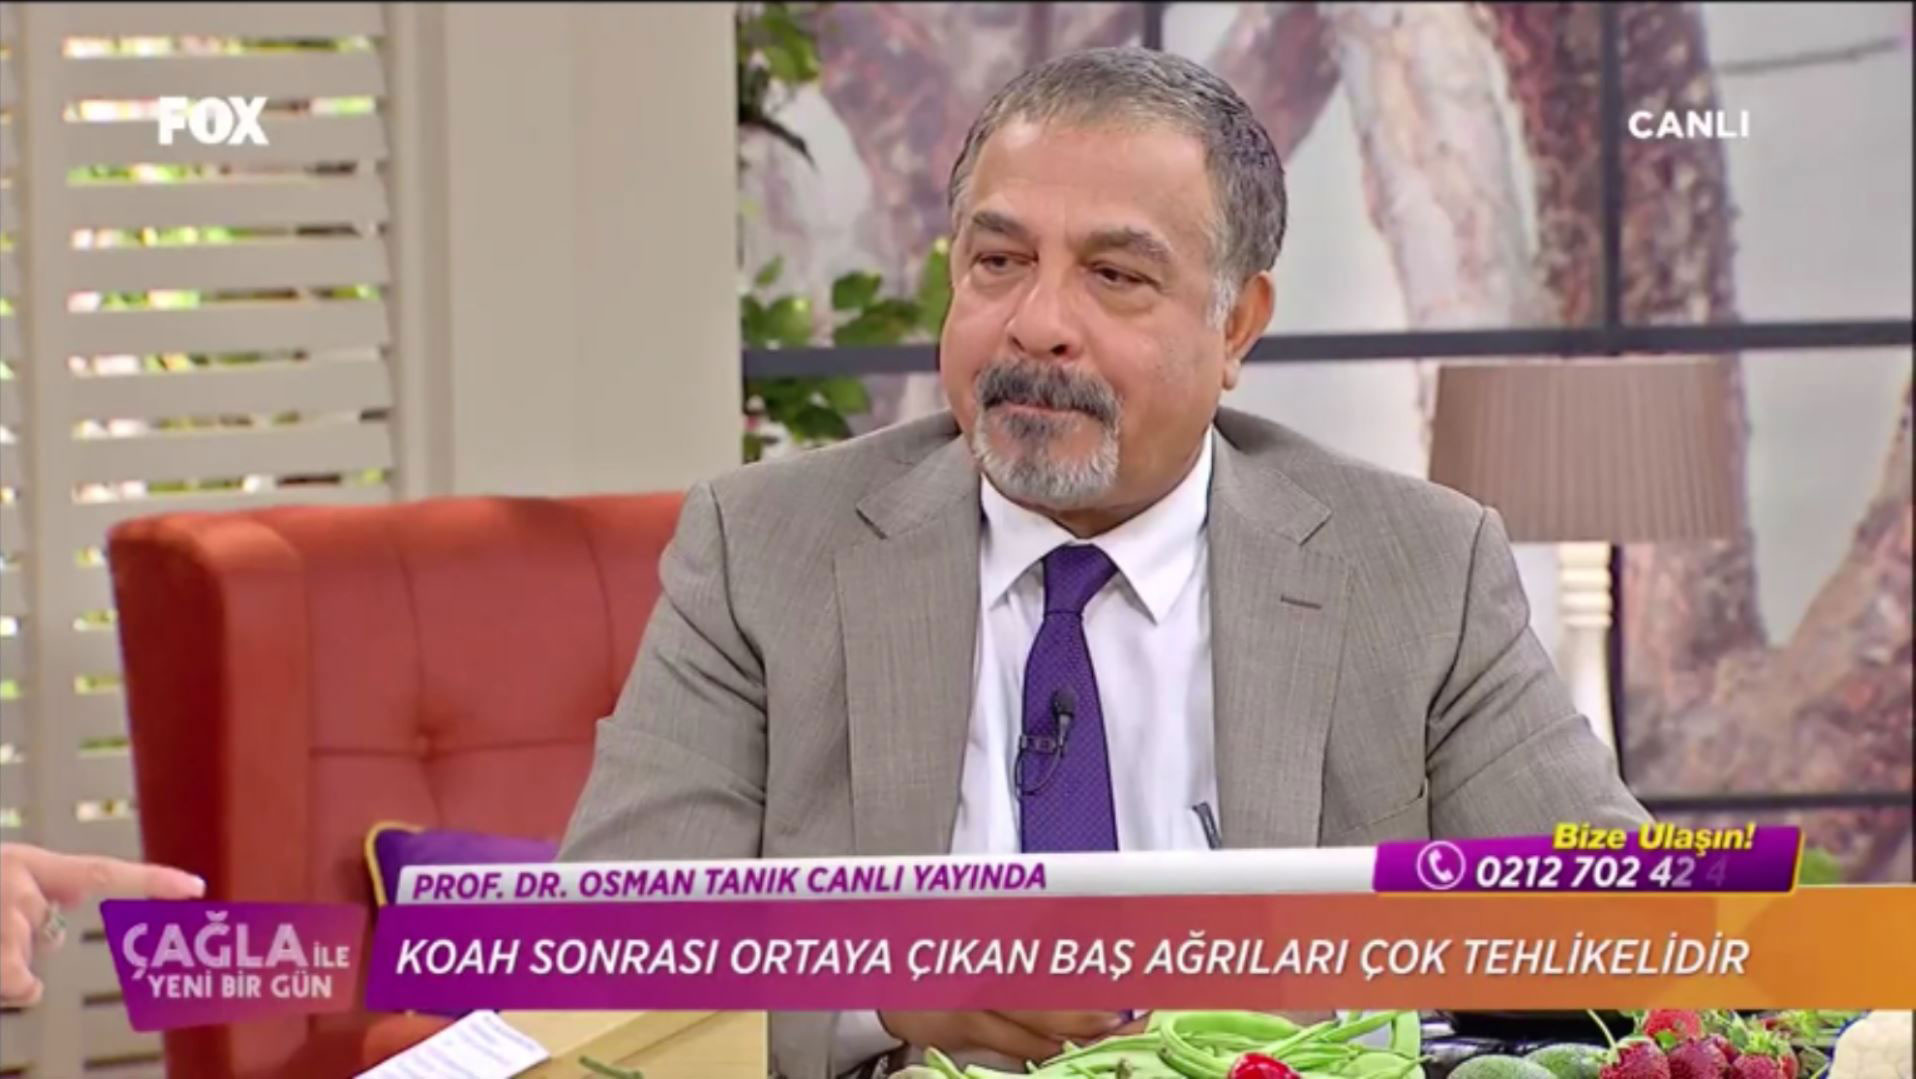 Prof. Dr. Osman Tanık Fox kanalında epilepsi hakkında bilgi verdi